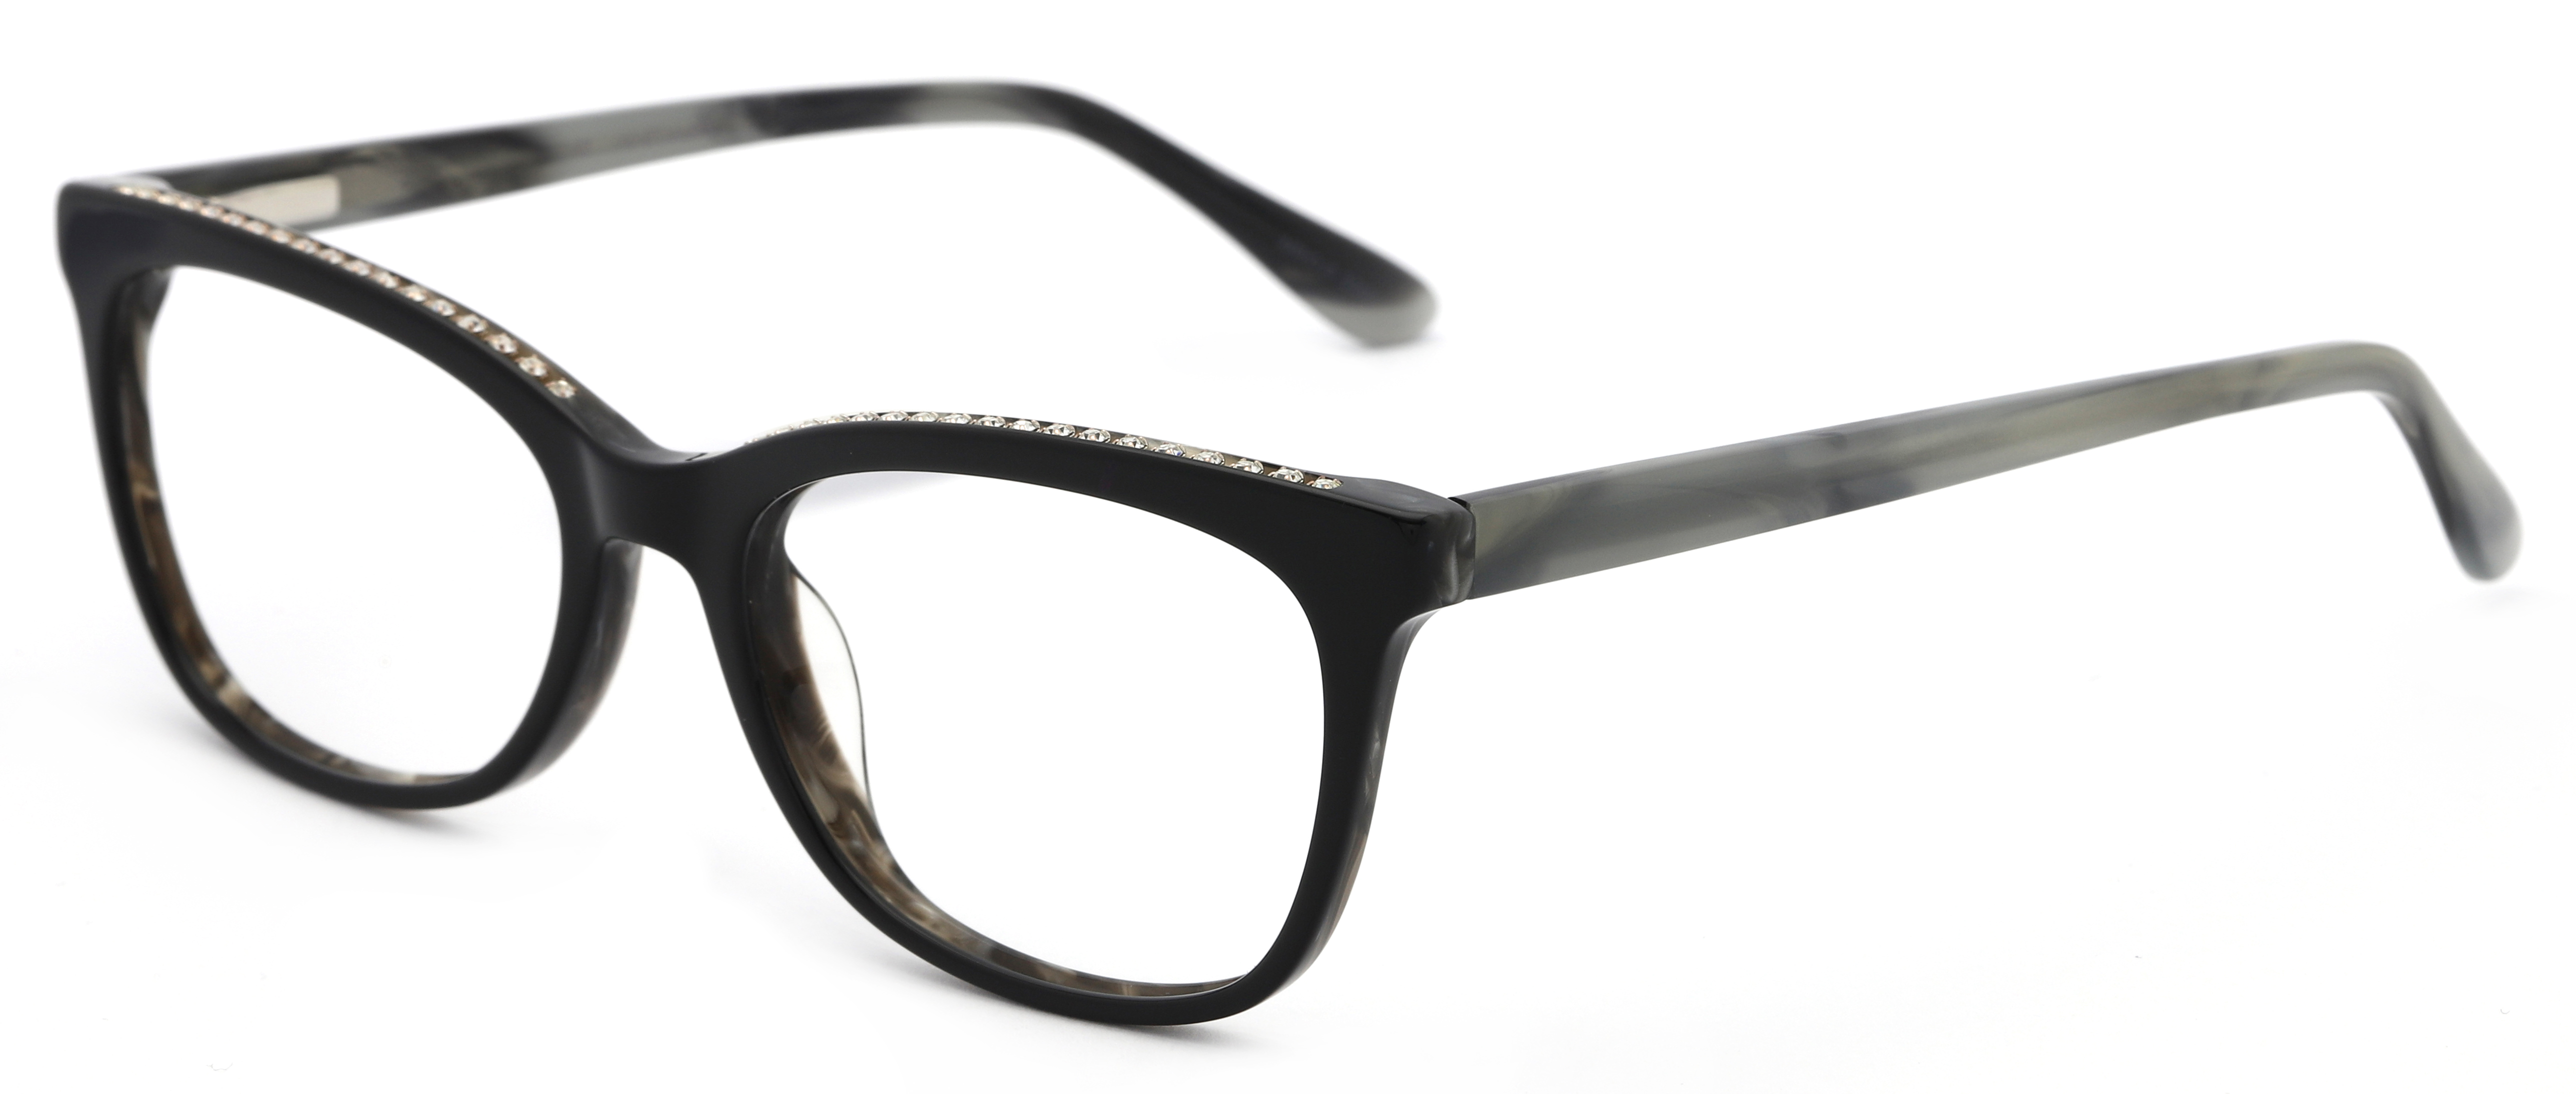 Designer Frames for Less Women's Rx'able Eyeglasses, Black - image 1 of 13